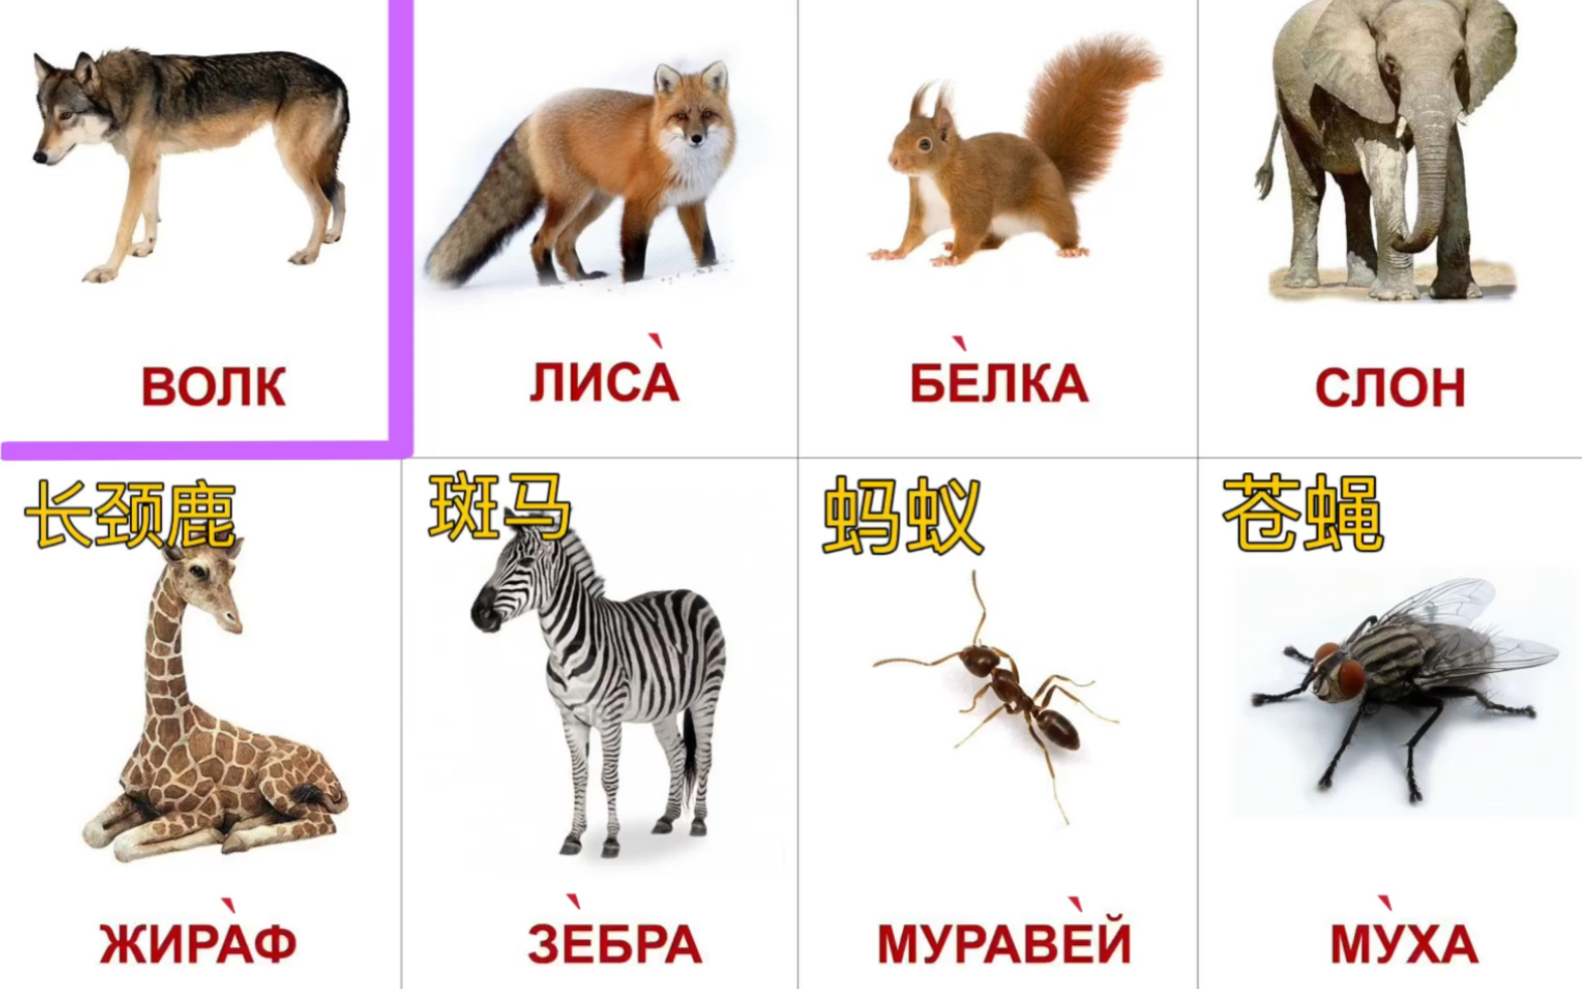 俄语常用动物名称